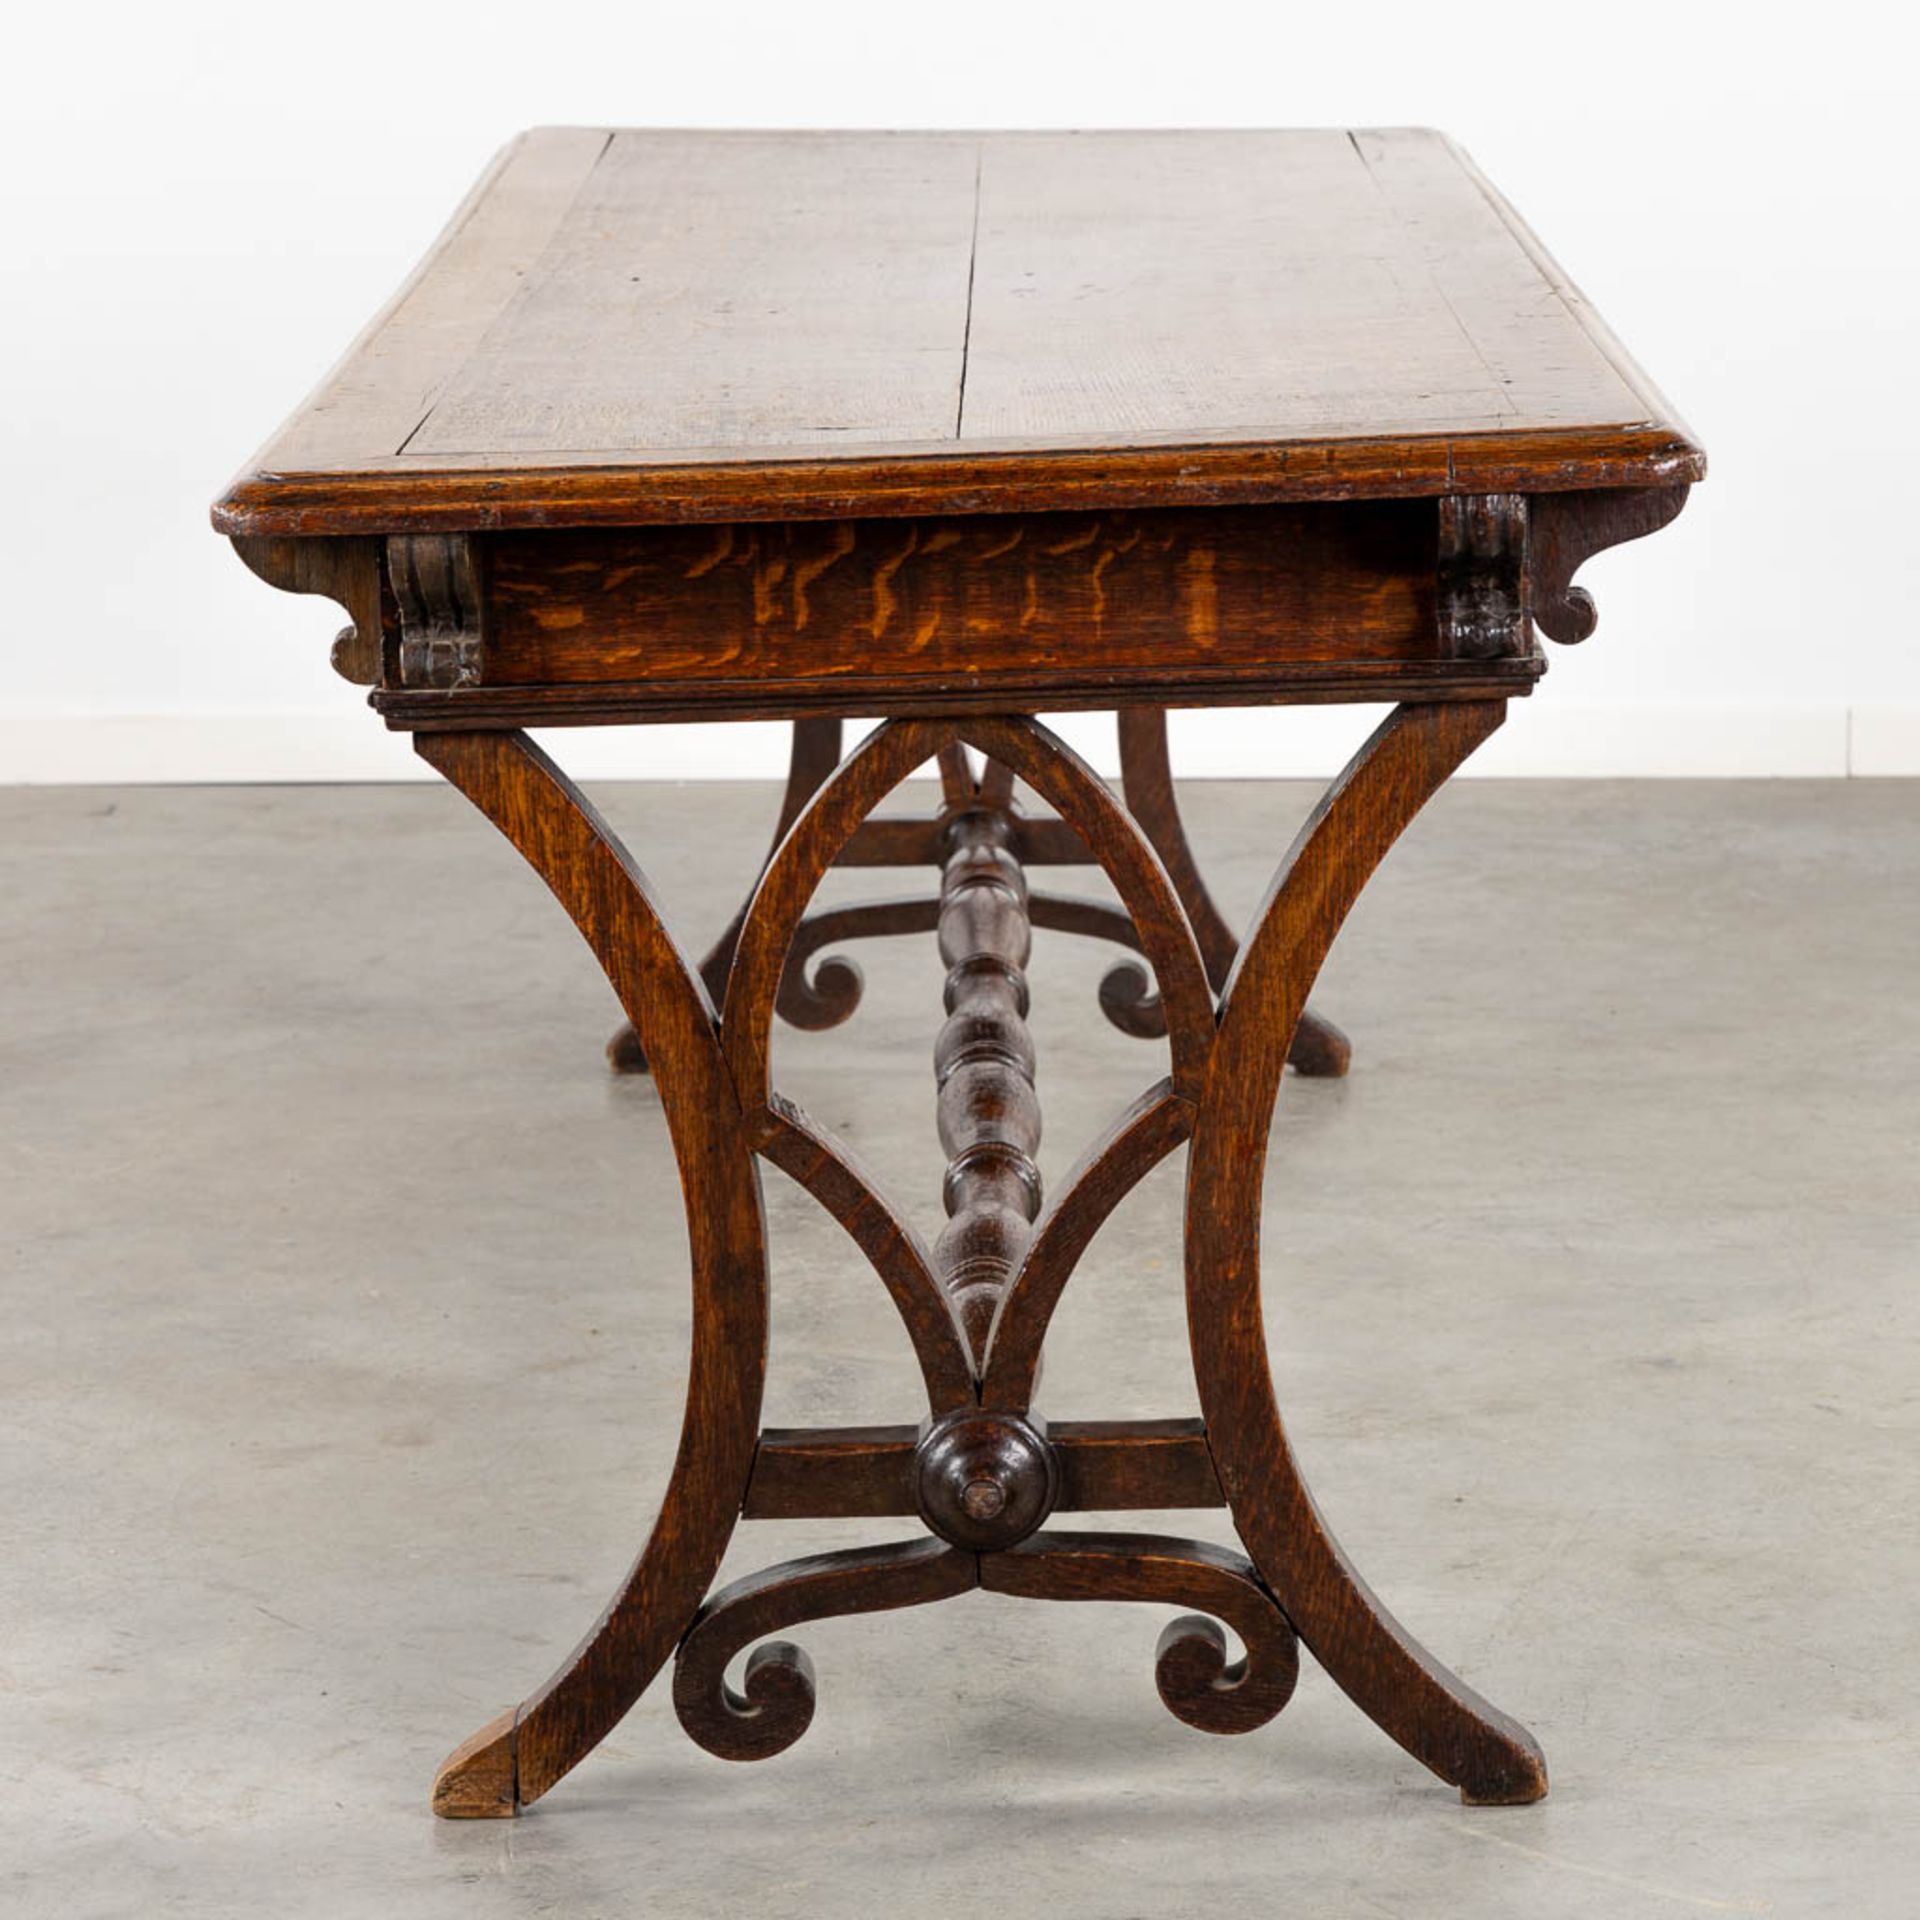 An antique desk/table with sculptures and a drawer, oak. 19th C. (L:77 x W:217 x H:76 cm) - Bild 5 aus 13